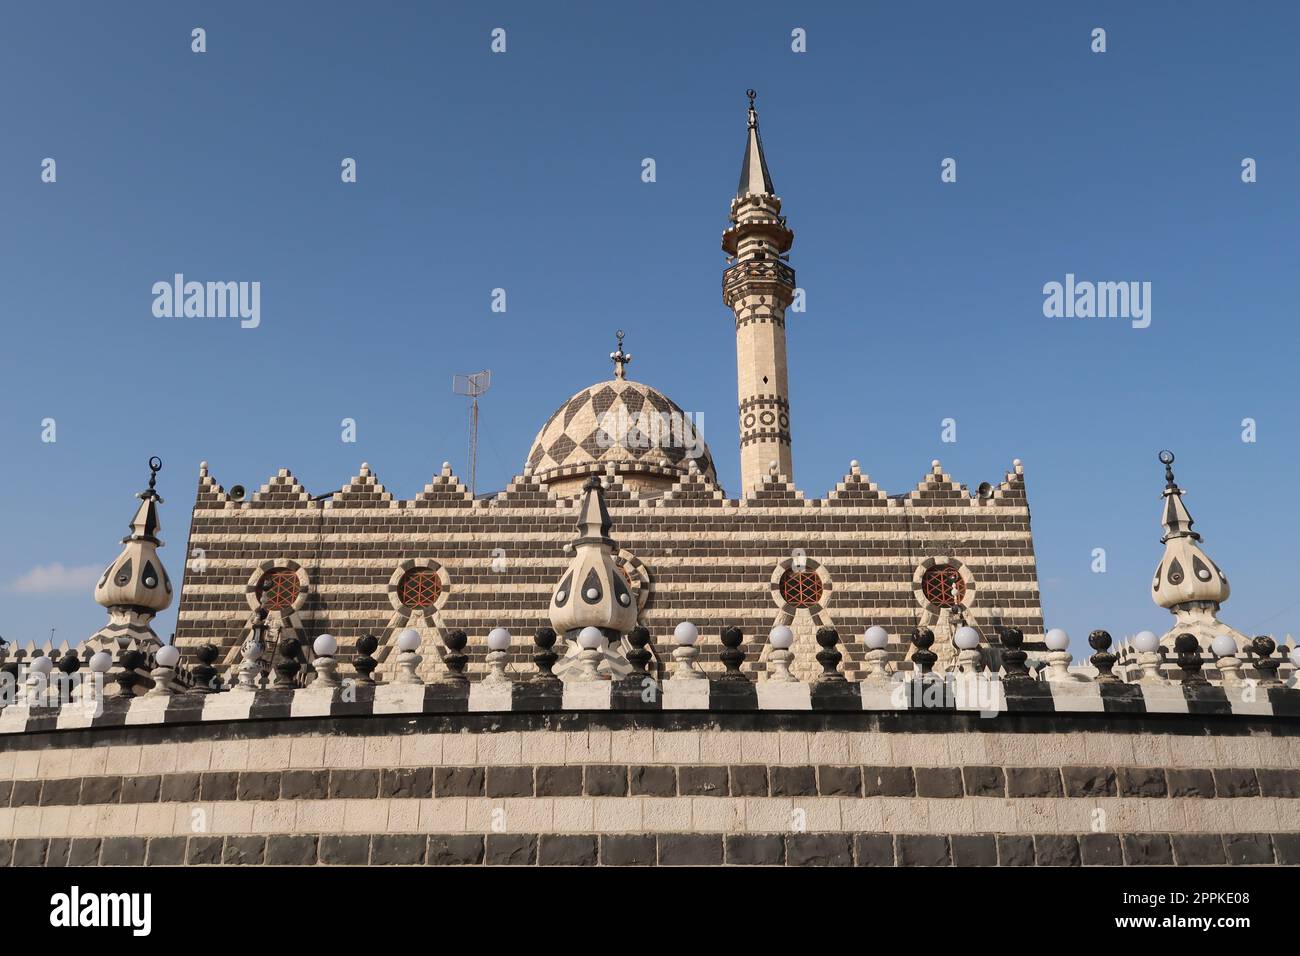 The beautiful striped Abu Darwish Mosque in Amman, Jordan Stock Photo